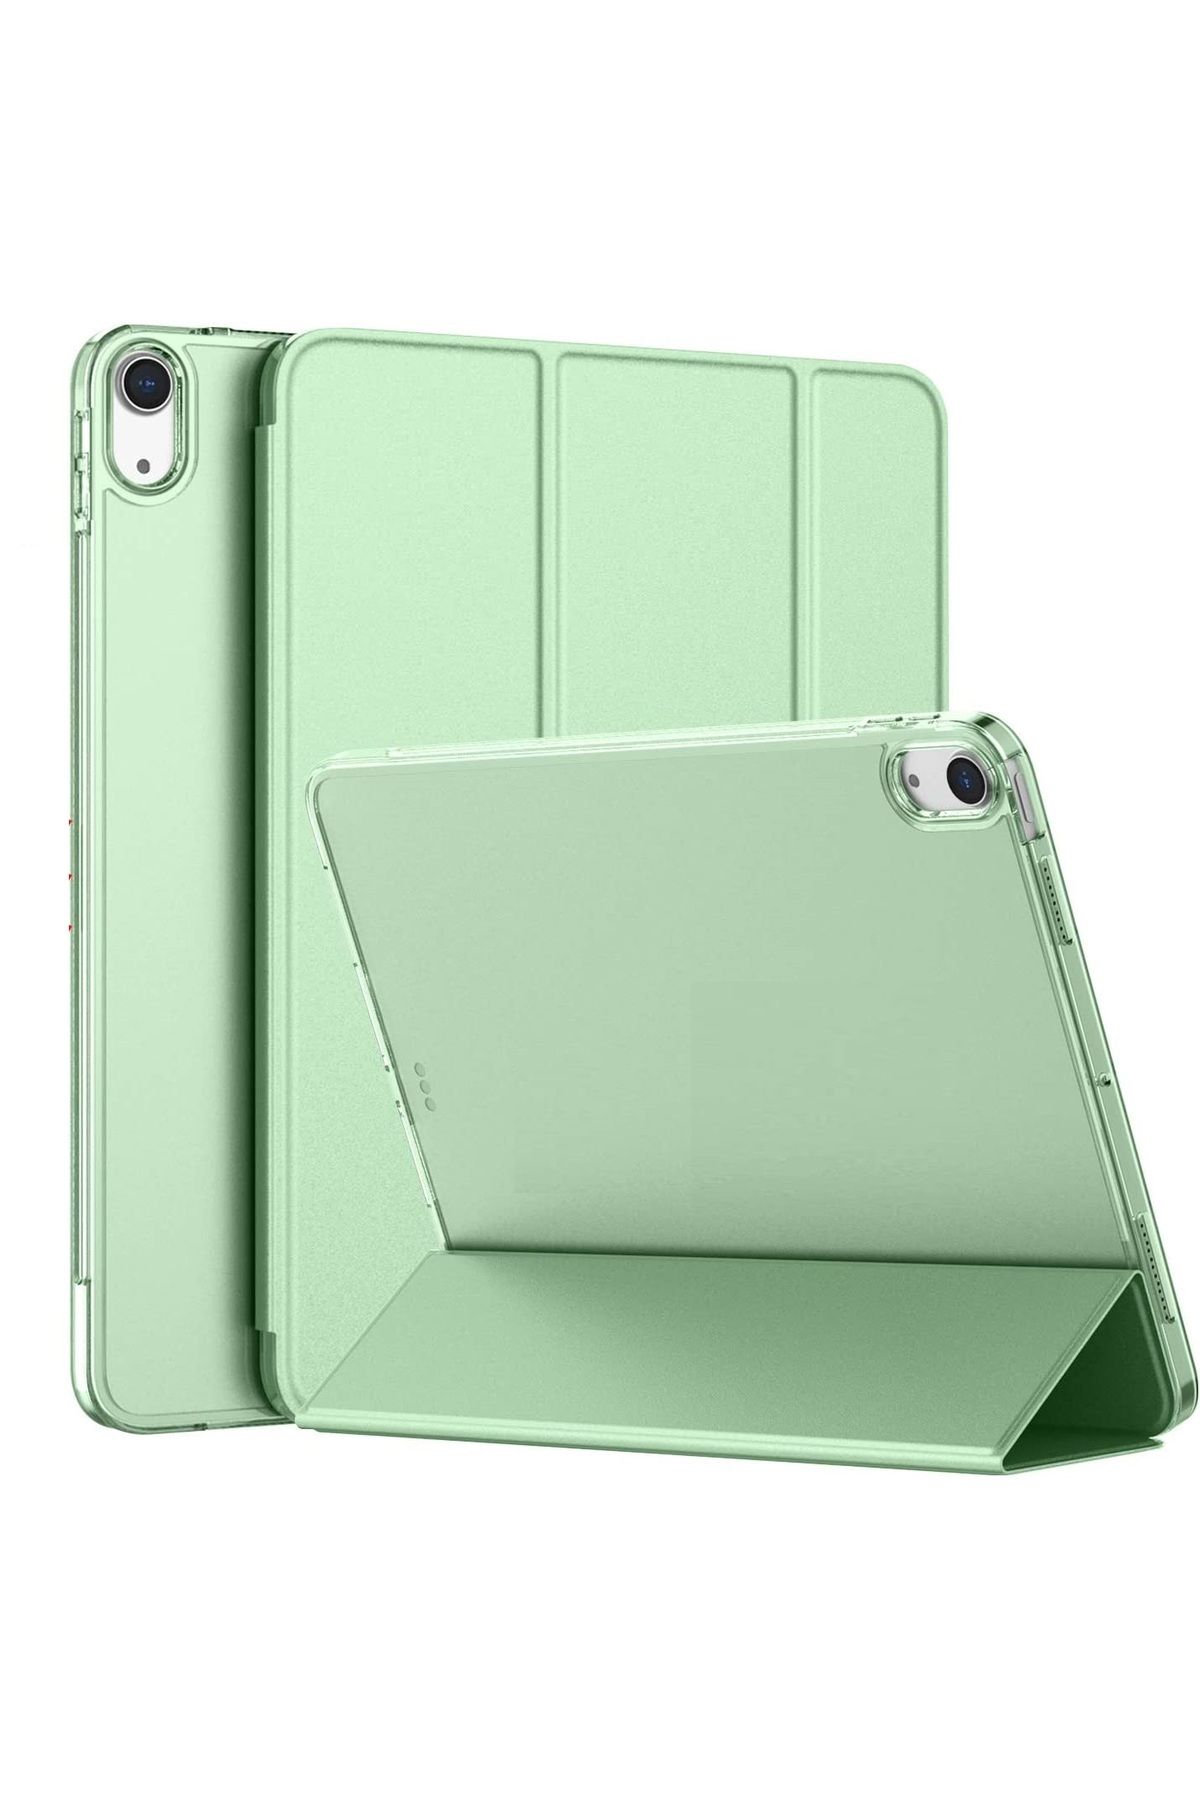 UnDePlus Ipad Pro 10.5 Uyumlu Kılıf Pu Deri Smart Case A1701 A1709 A1852 Açık Yeşil